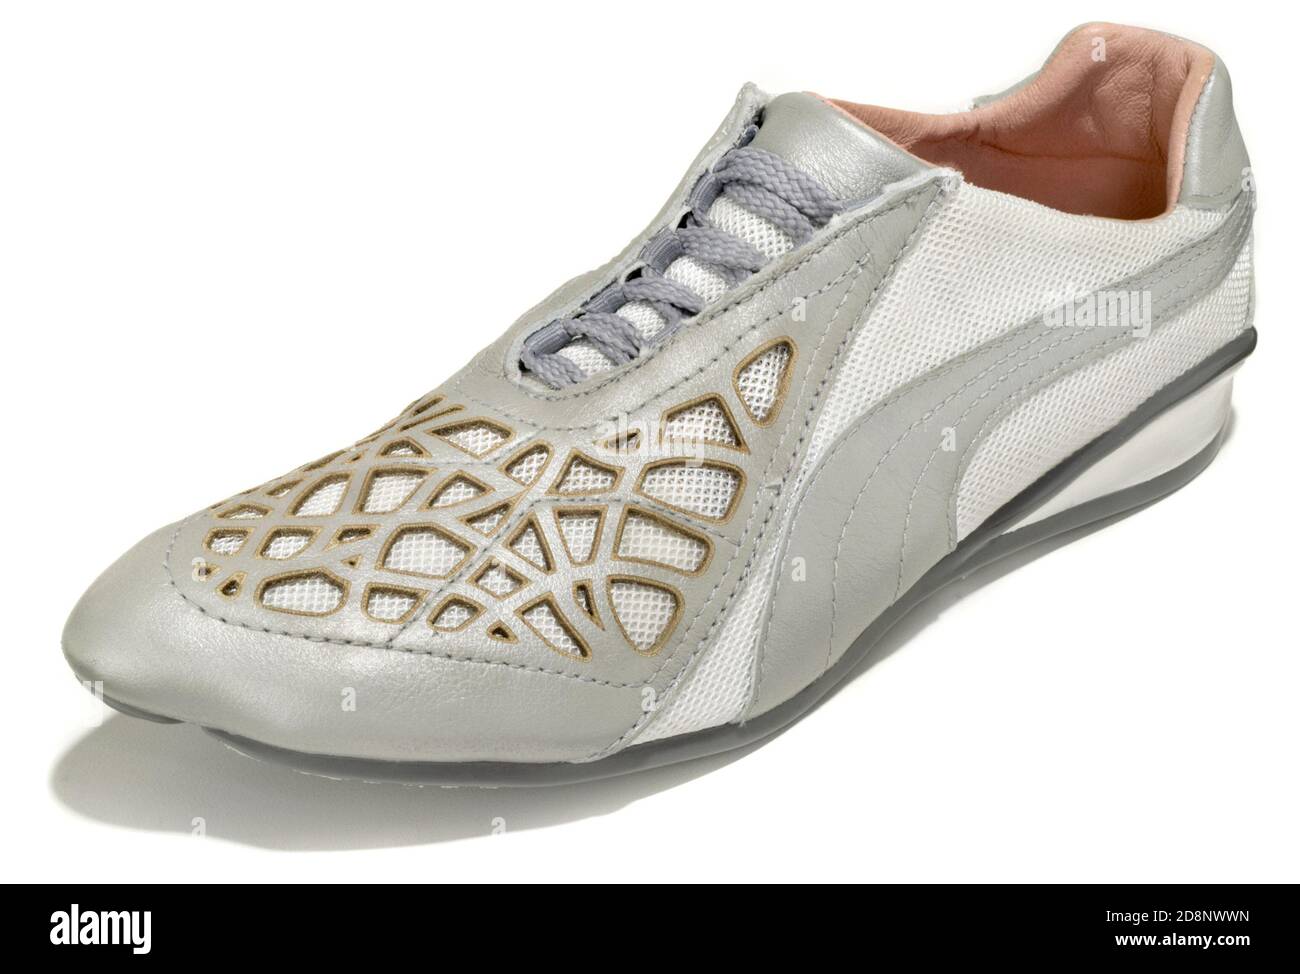 Unas zapatillas de running blancas y plateadas con detalles de color dorado  Diseñado por Puma en colaboración con Alexander McQueen fotografiado en un  fondo blanco Fotografía de stock - Alamy